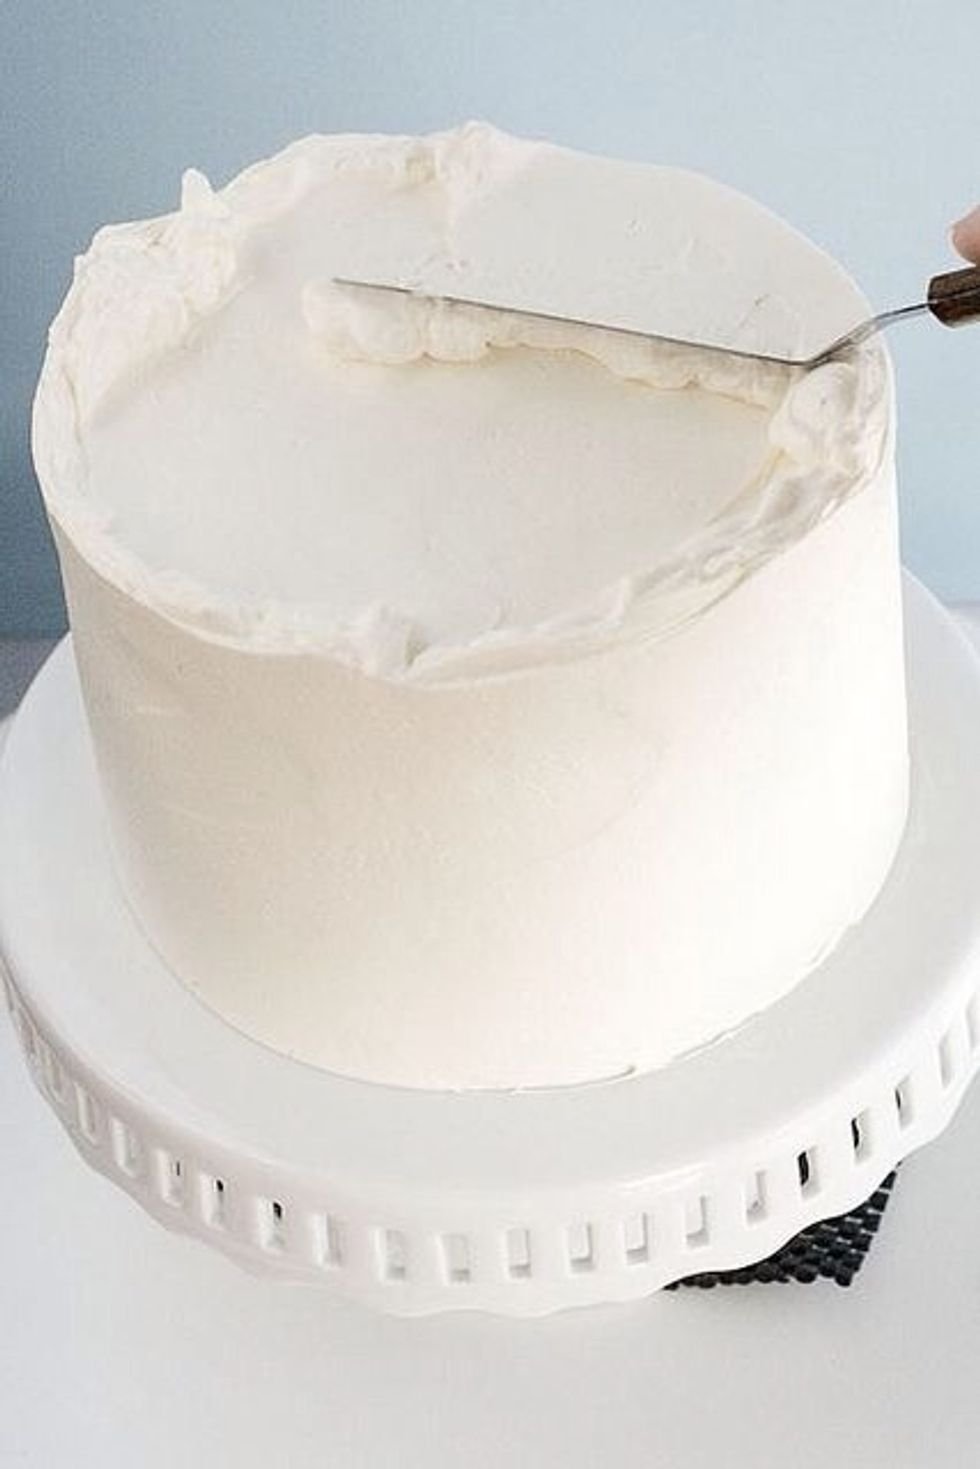 Выравнивание и украшение торта кремом чиз. Крем-чиз для торта для выравнивания. Торт выровненный кремом. Крем для обмазки торта. Белый крем для торта для выравнивания.